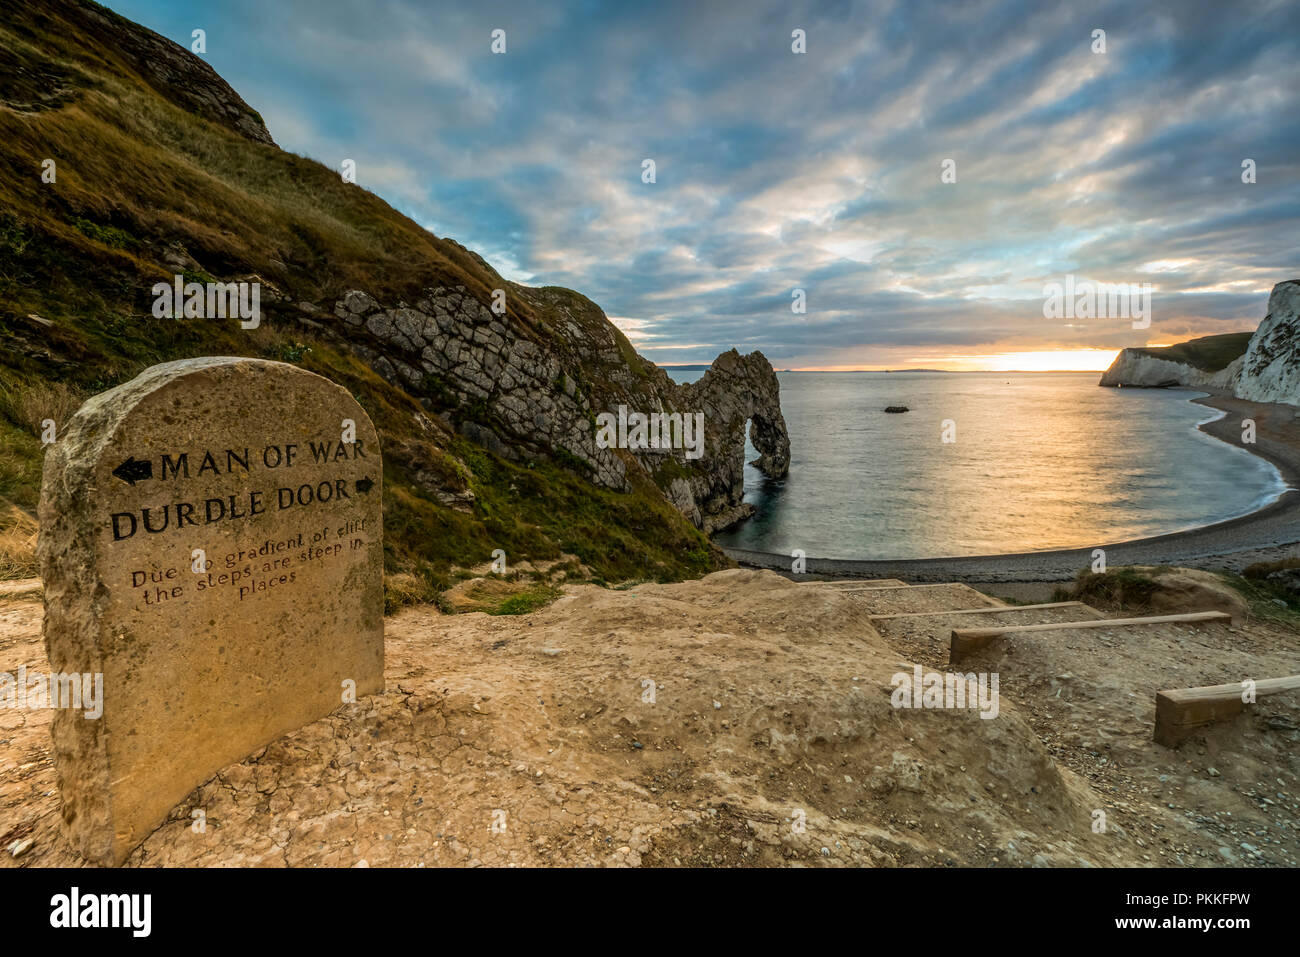 Durdle Door on the Jurassic coast of Dorset at sunset Stock Photo